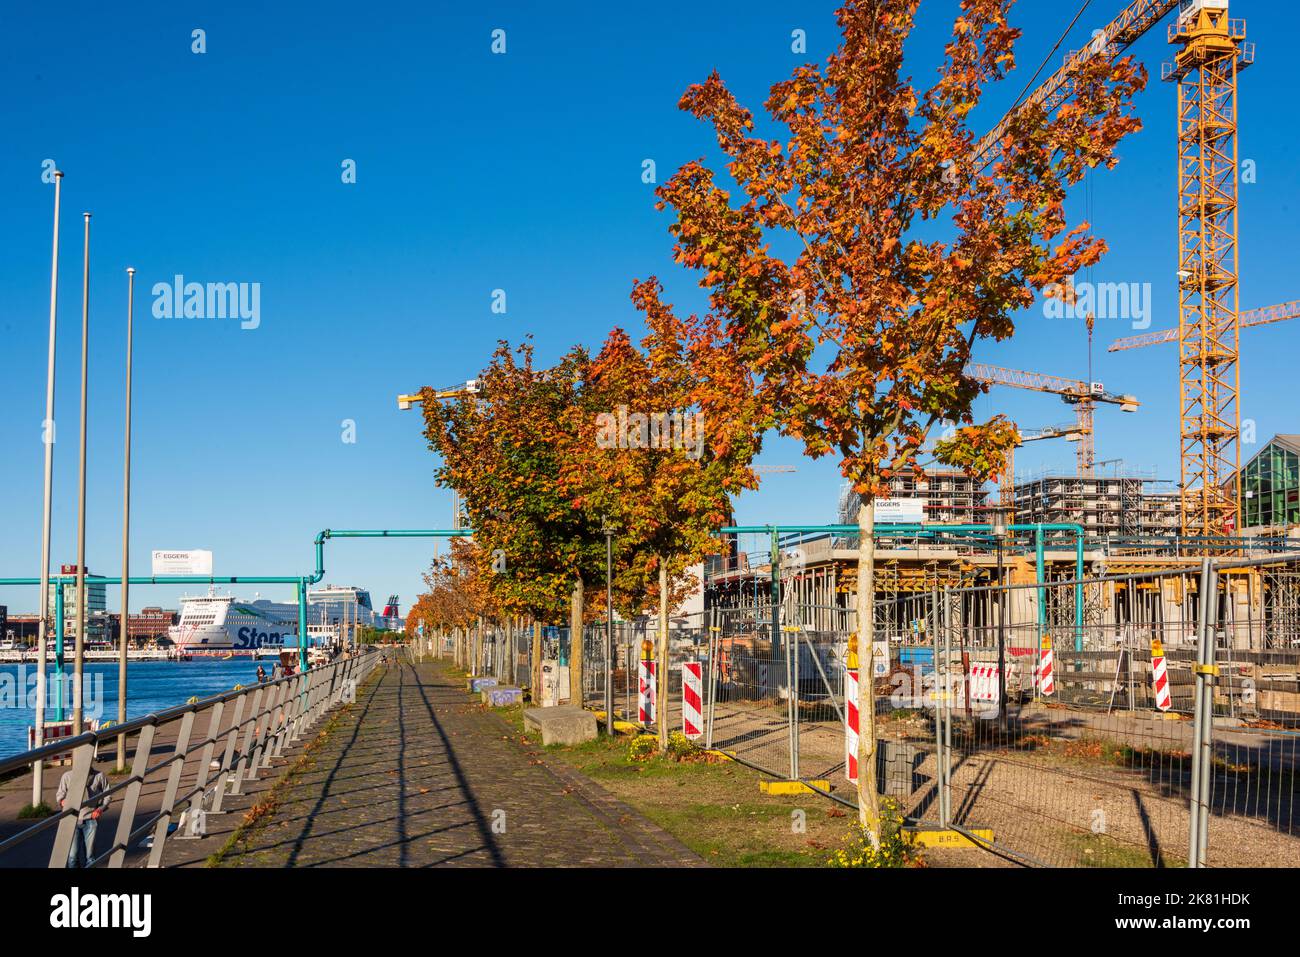 Kaieler Hafen bei herrlichem, Sonnenschein mit Blick auf die Neubauten mit Wohn- und Bürogebäuden am Ostufer der Kieler Förde Bäume mit herbstlichem la Foto Stock